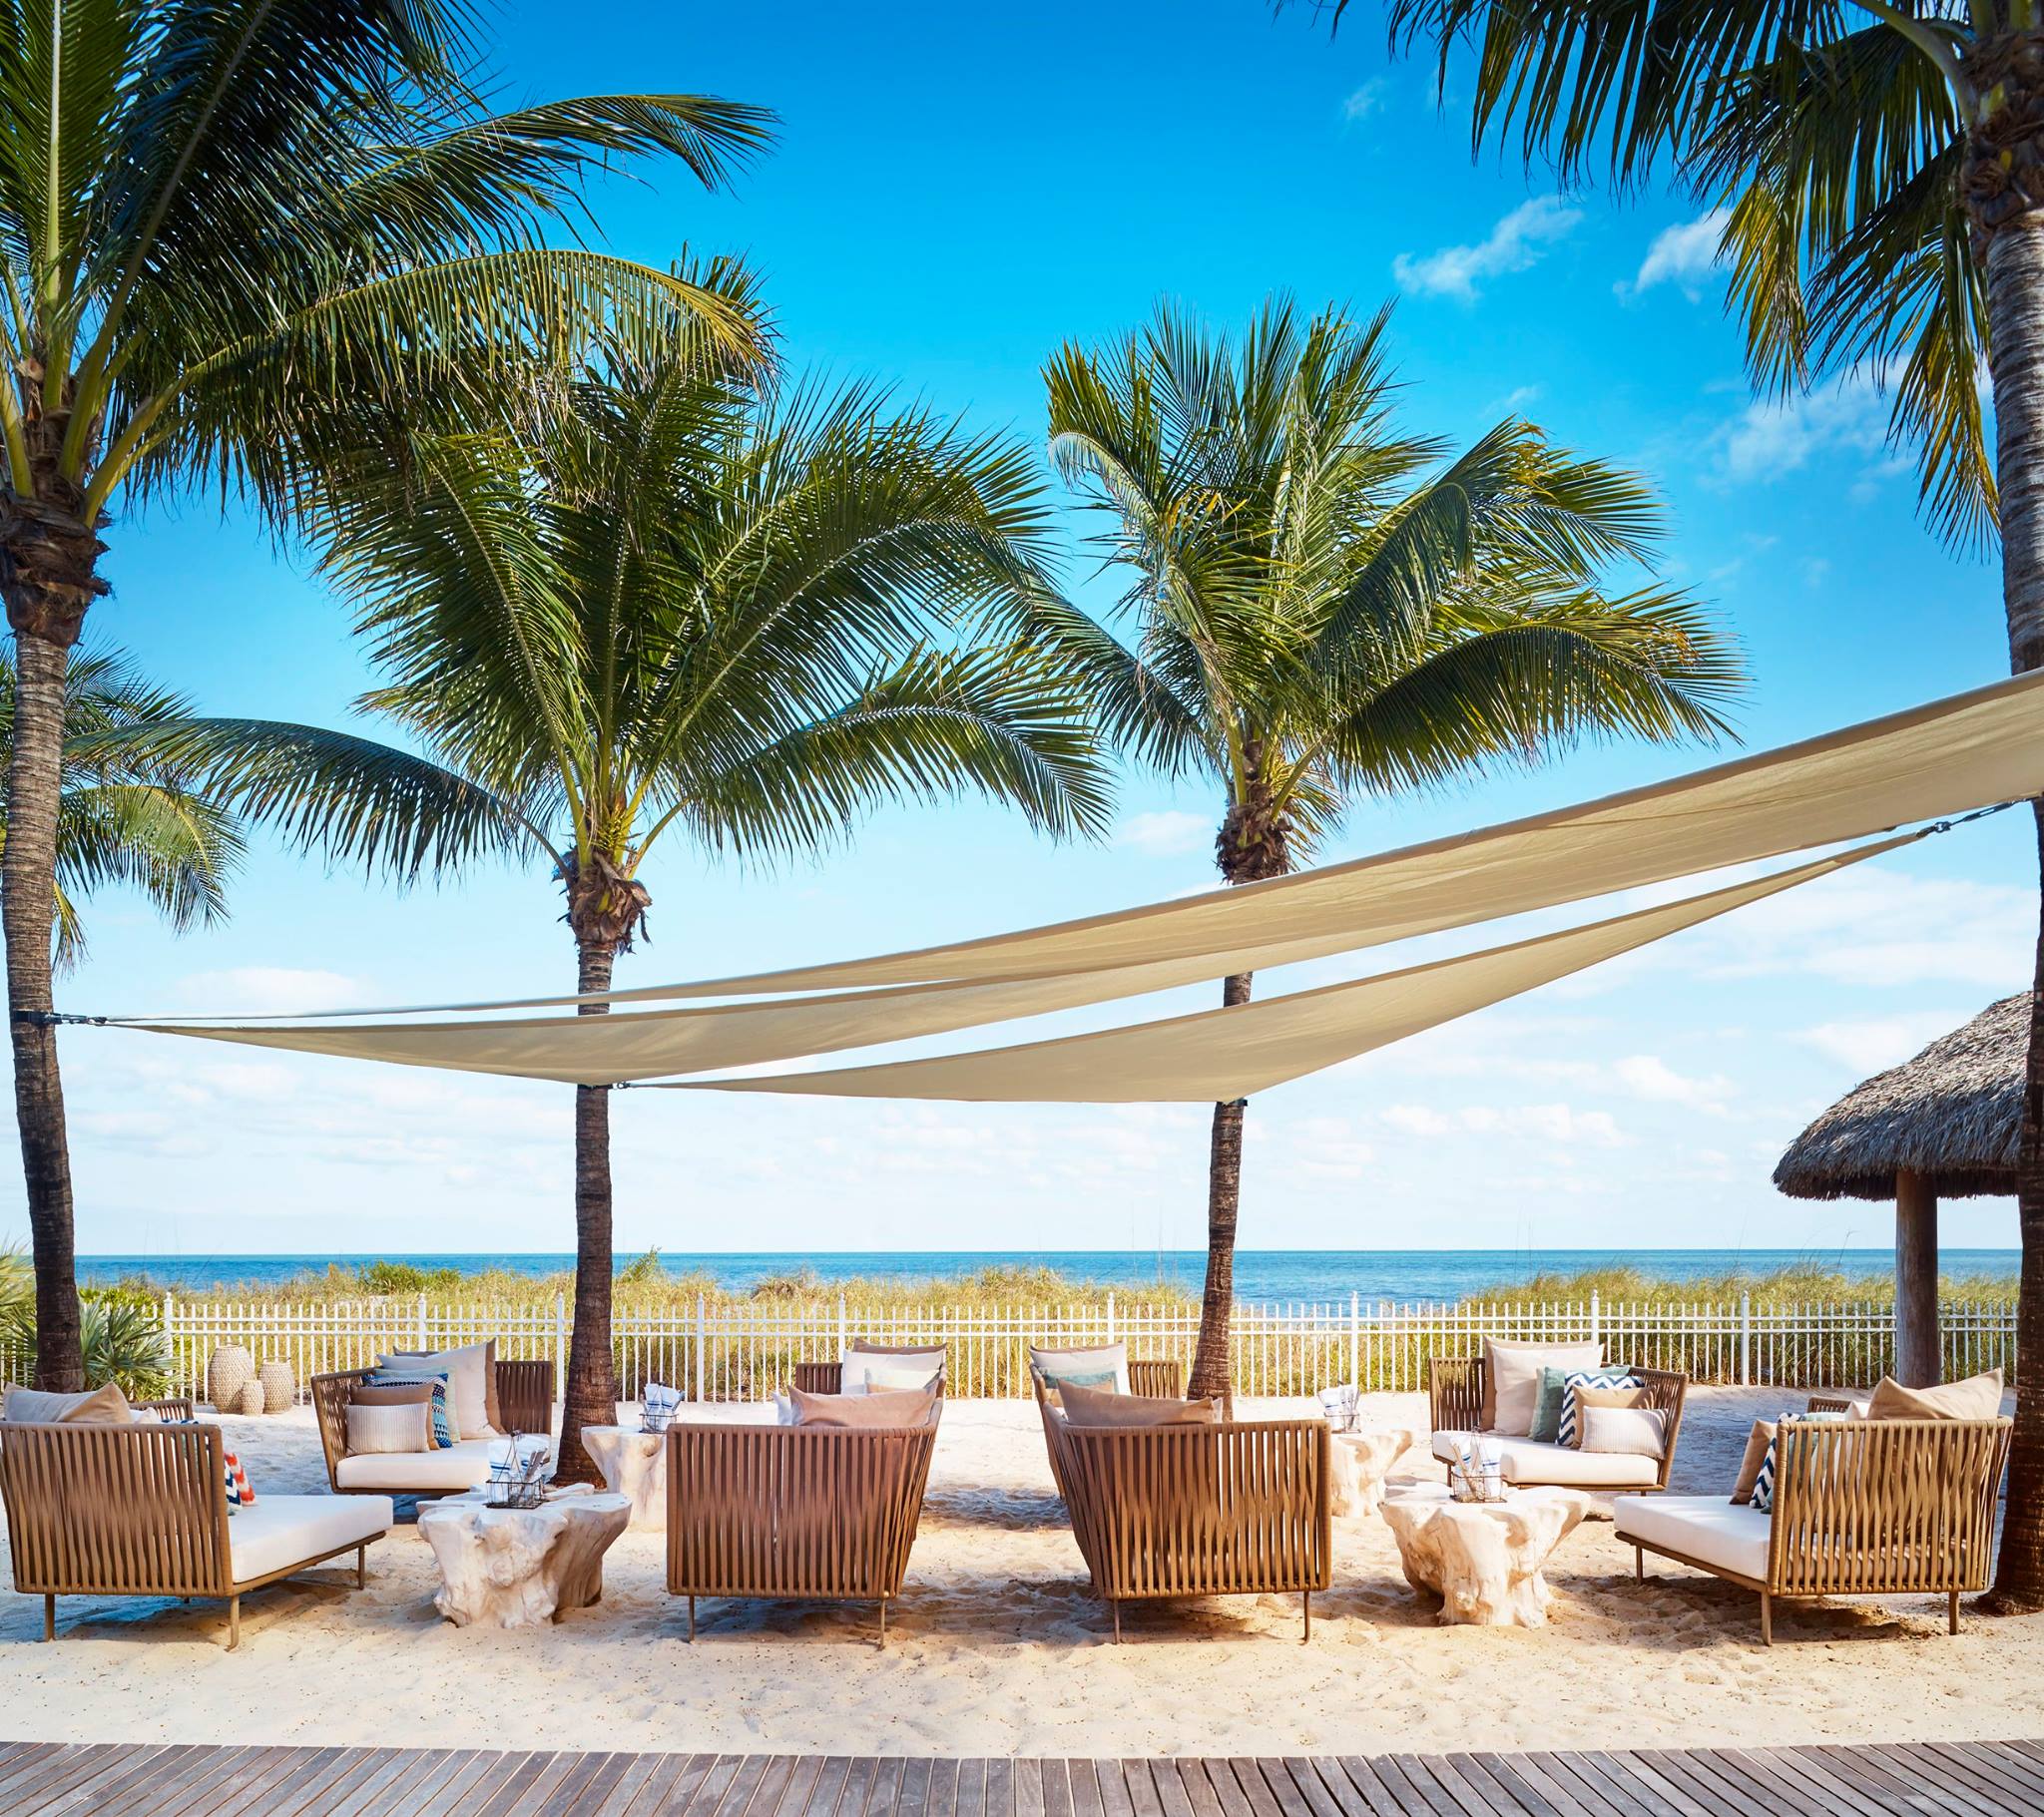 The Ritz-Carlton Key Biscayne Miami in Florida